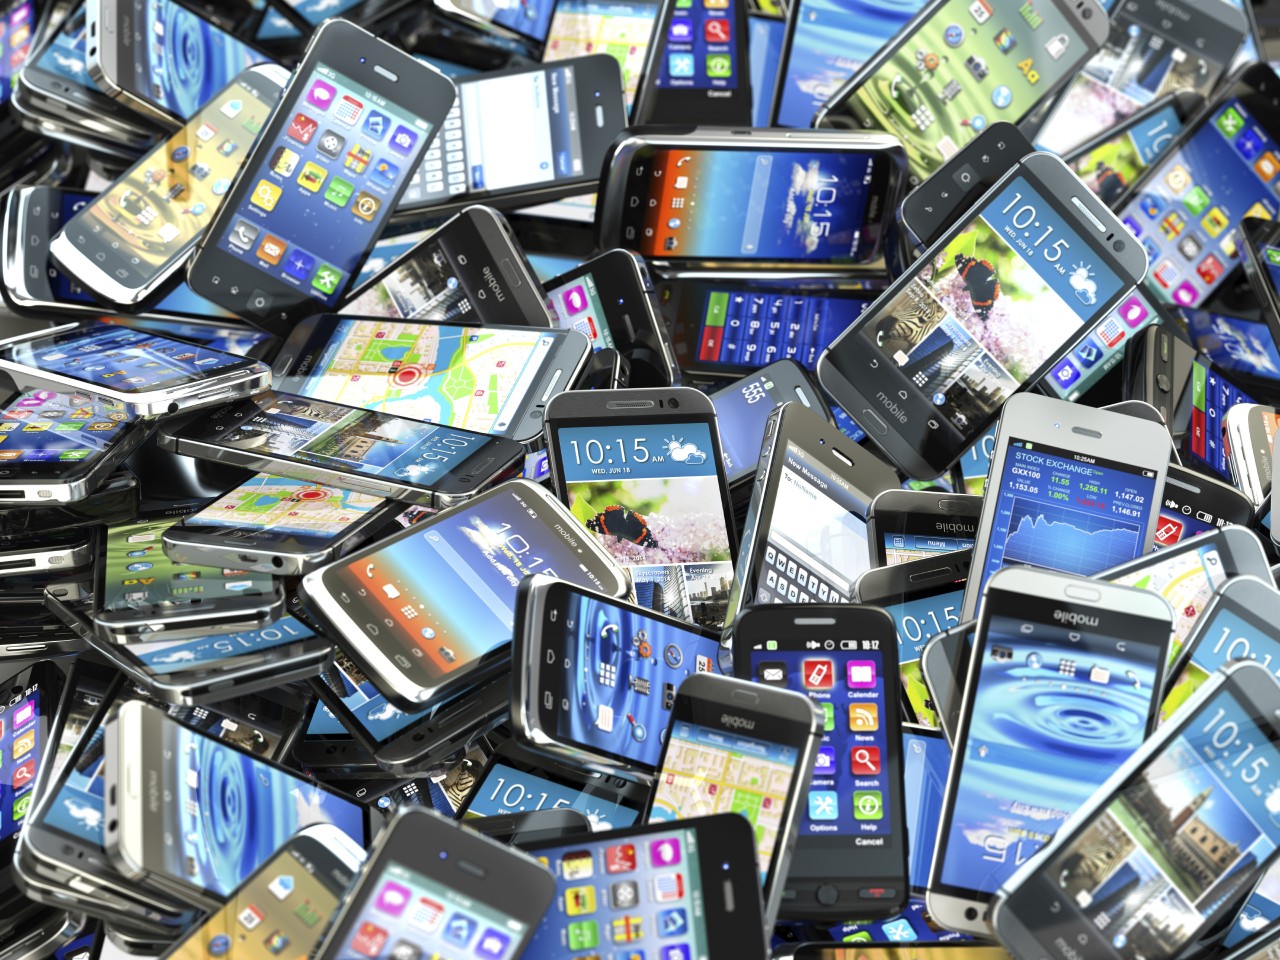 Vendite di smartphone ancora in calo, ma Huawei e Xiaomi crescono comunque (foto)